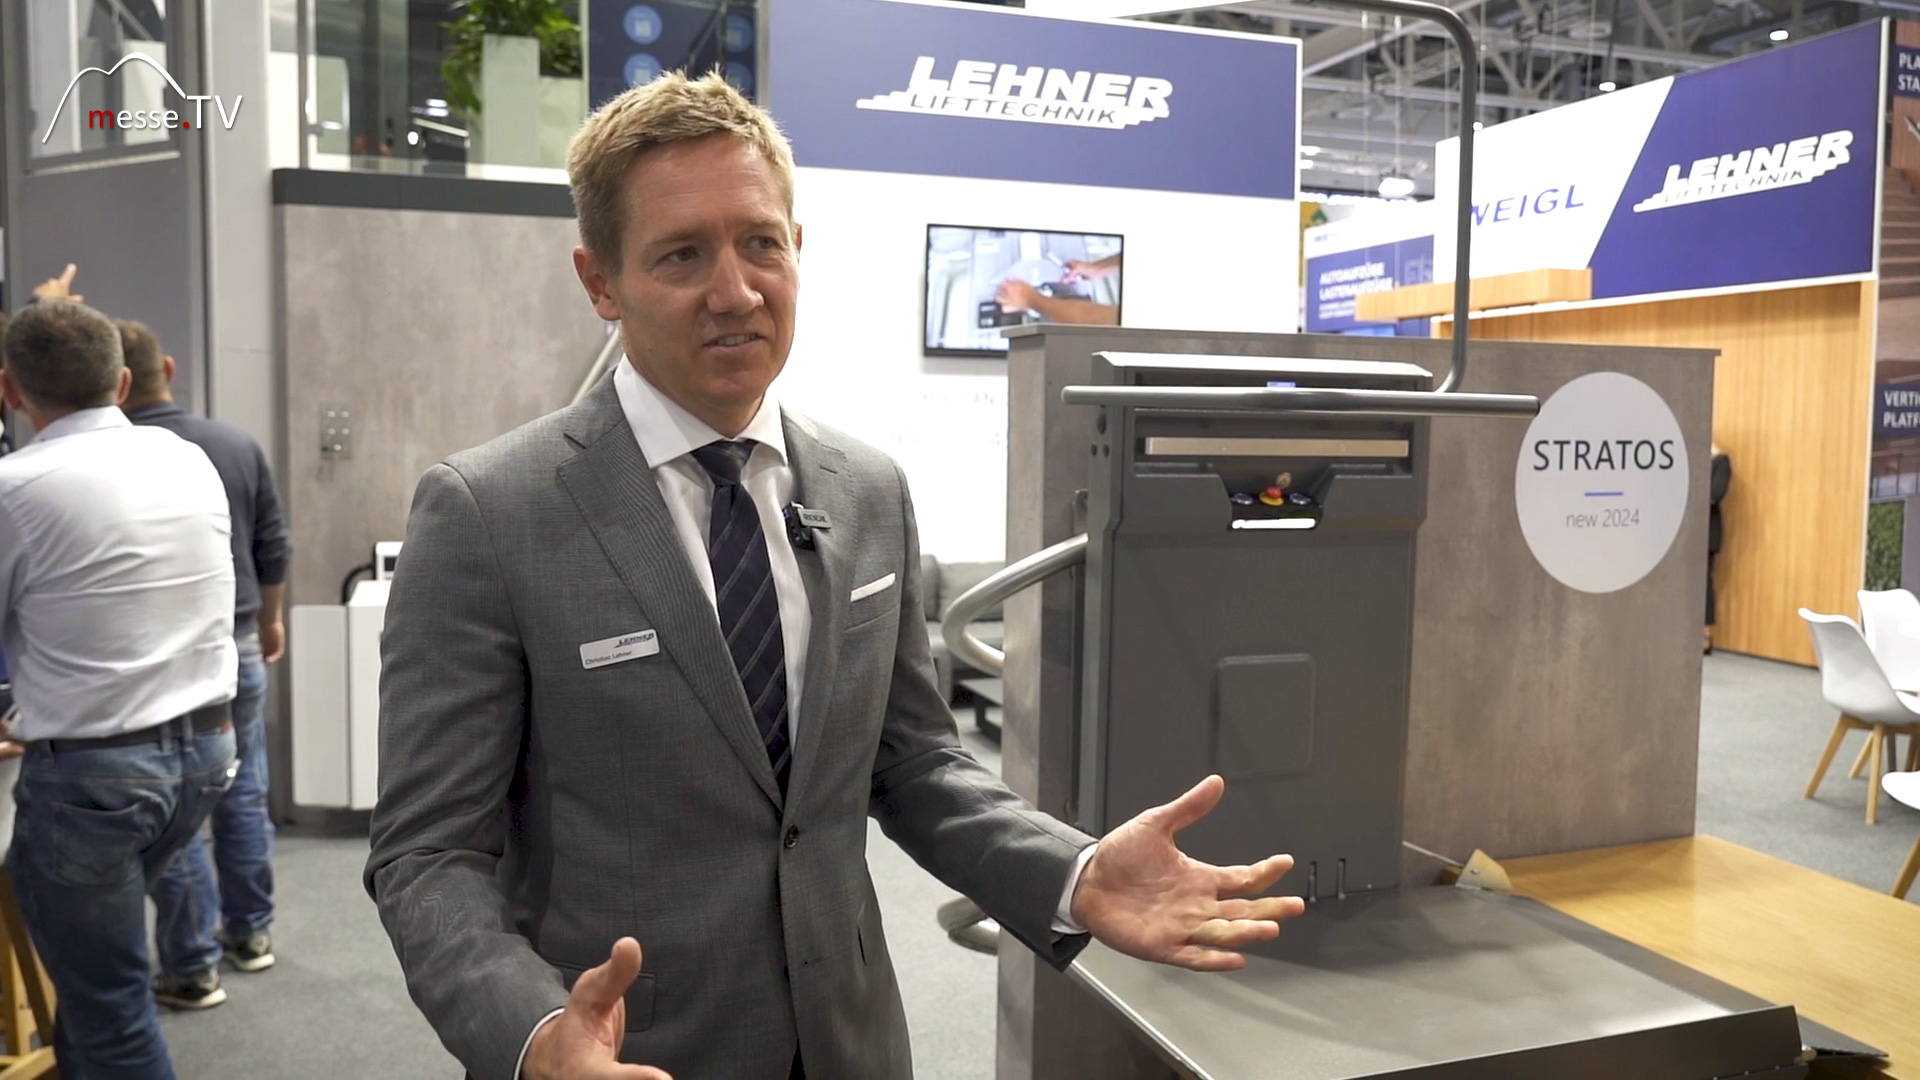 MesseTV interview Christian Lehner managing director Lehner lift technology